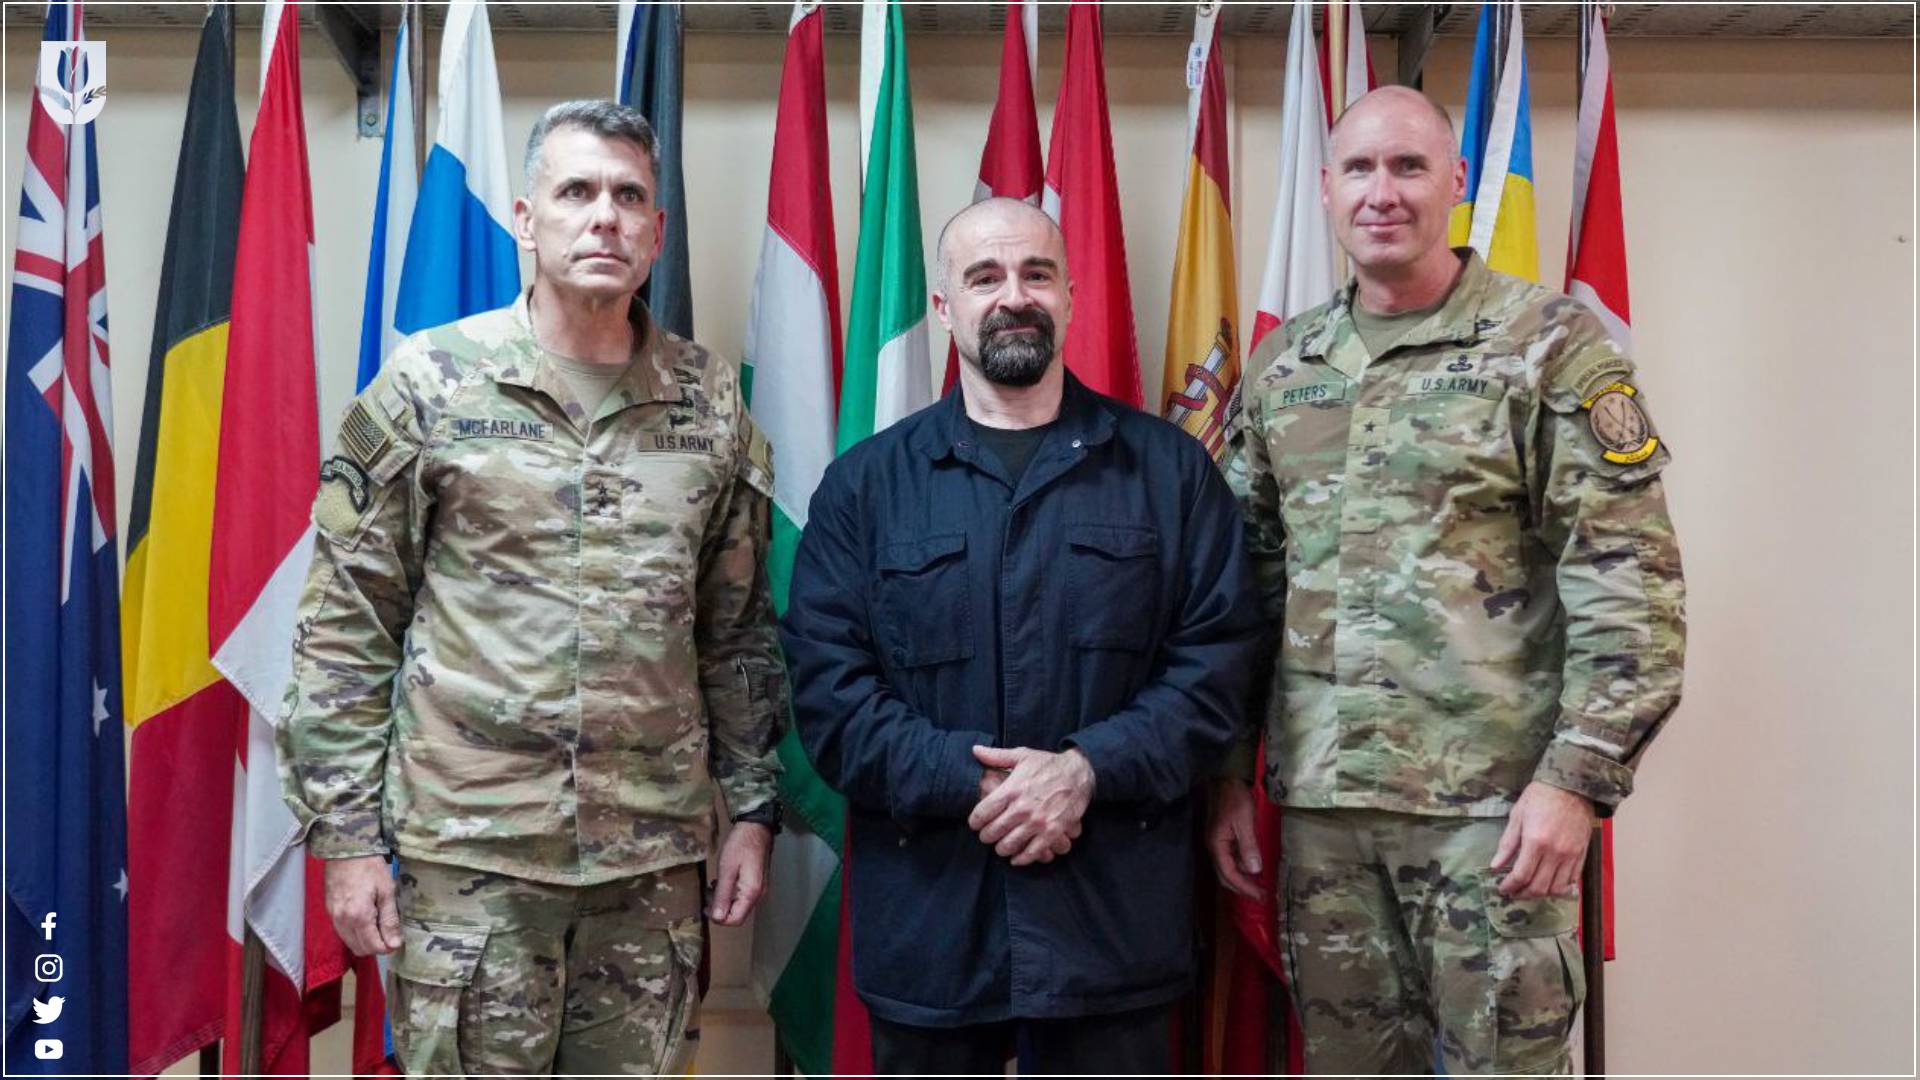  الرئيس بافل جلال طالباني يلتقي قائد قوات التحالف في العراق وسوريا